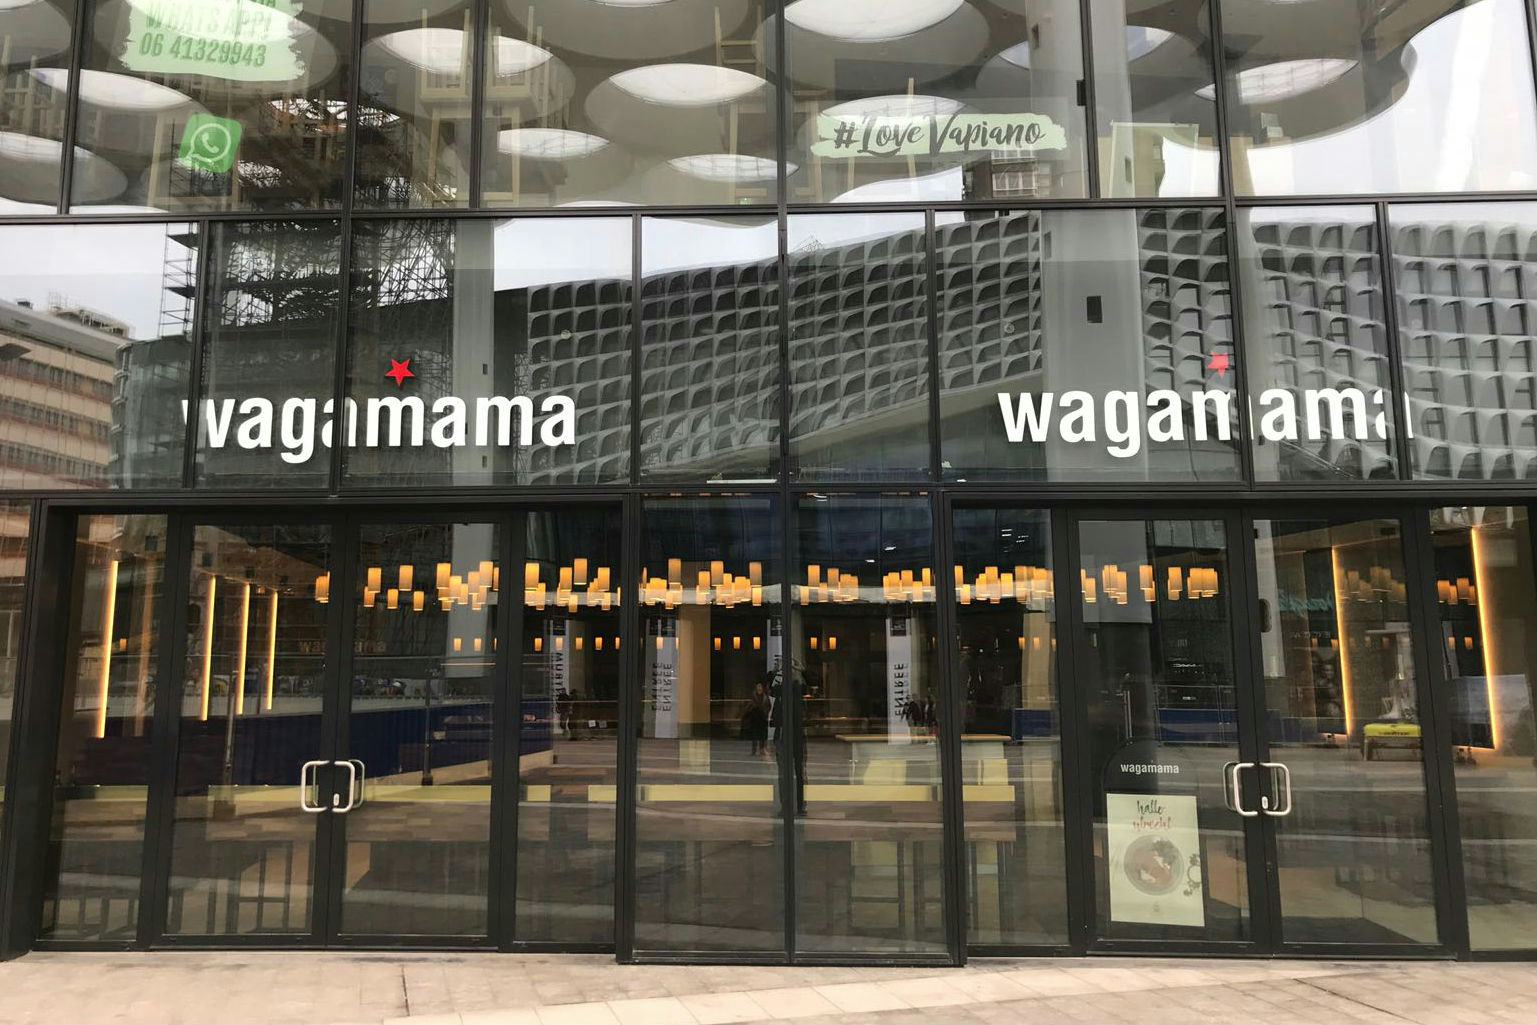 Wagamama opent restaurant in Hoog Catherijne